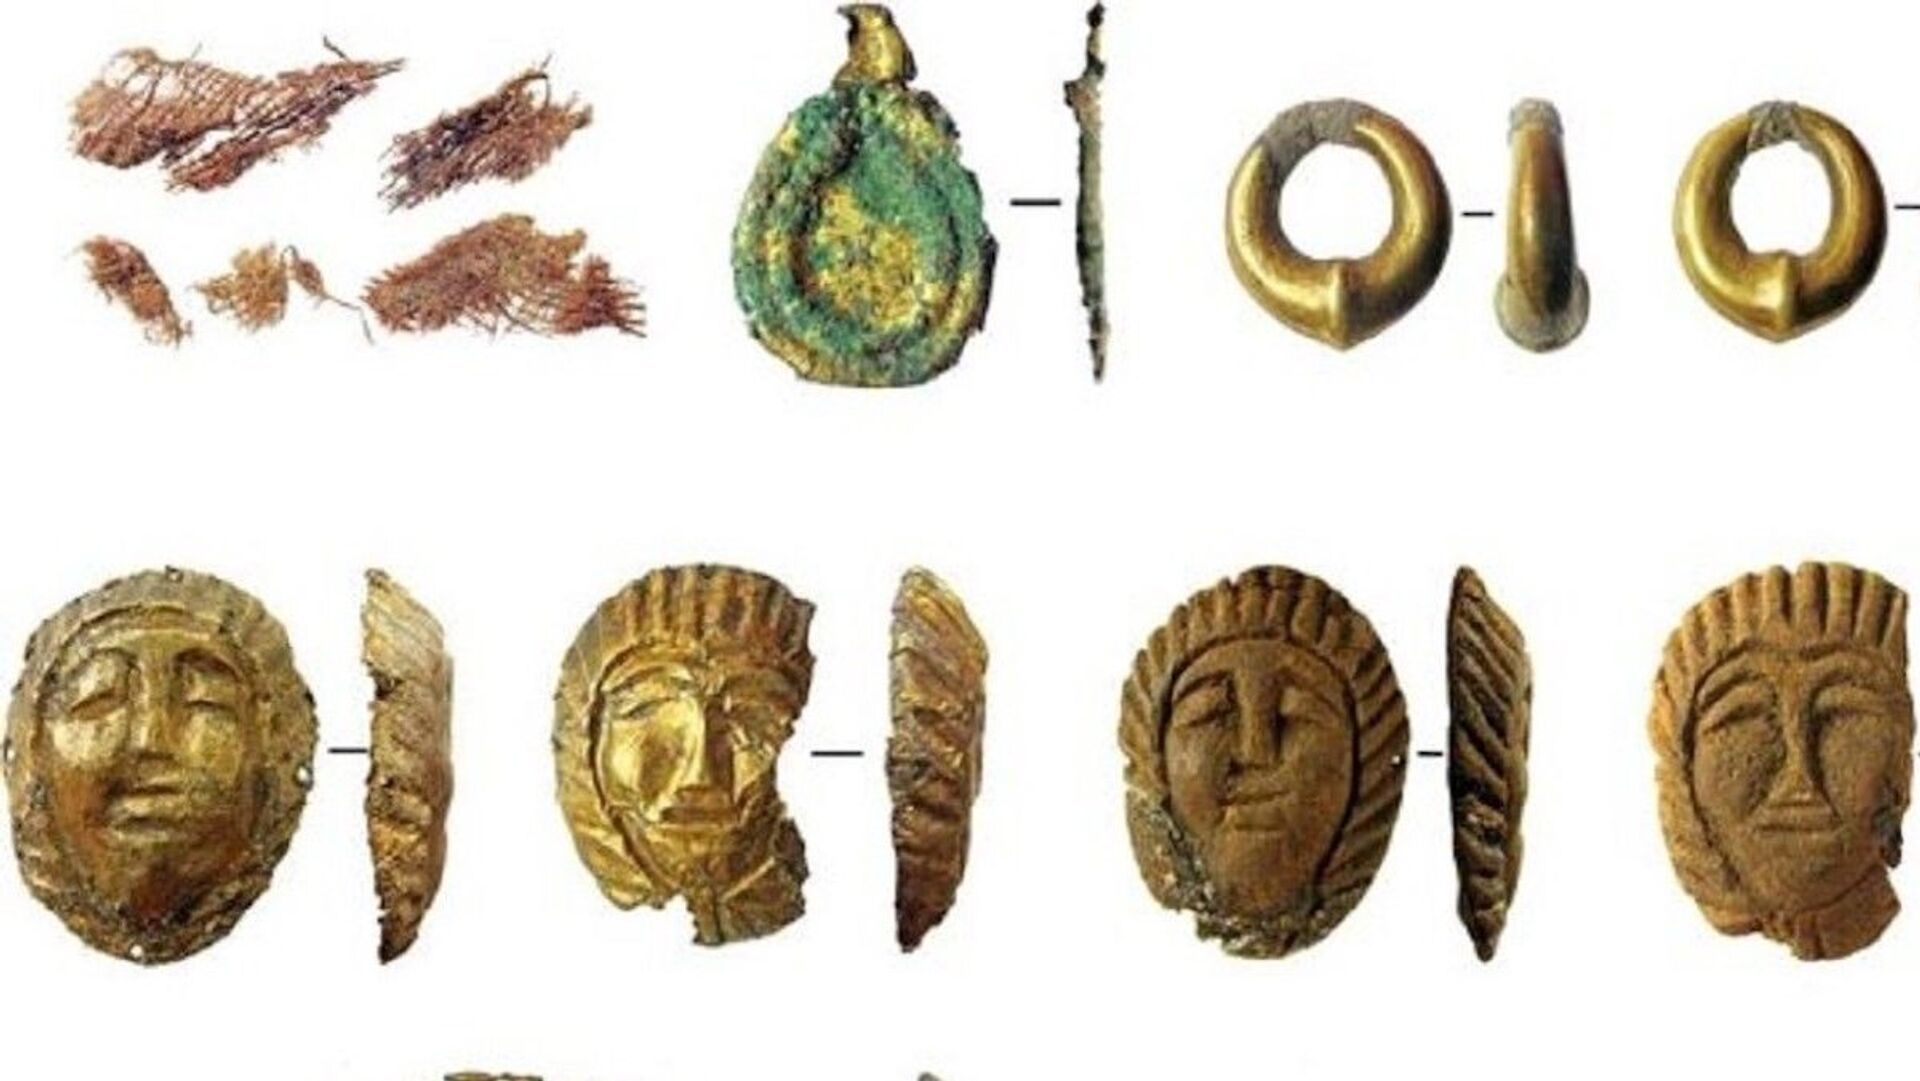 Objetos recuperados da tumba de garota encontrada no Cazaquistão - Sputnik Brasil, 1920, 30.12.2021